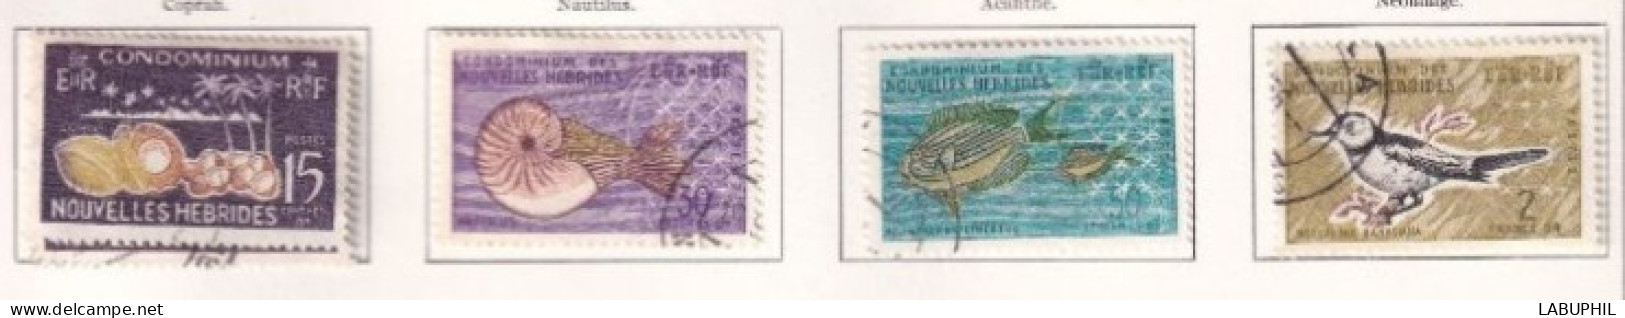 NOUVELLES HEBRIDES Dispersion D'une Collection Oblitéré Et Mlh  1963 Faune - Used Stamps